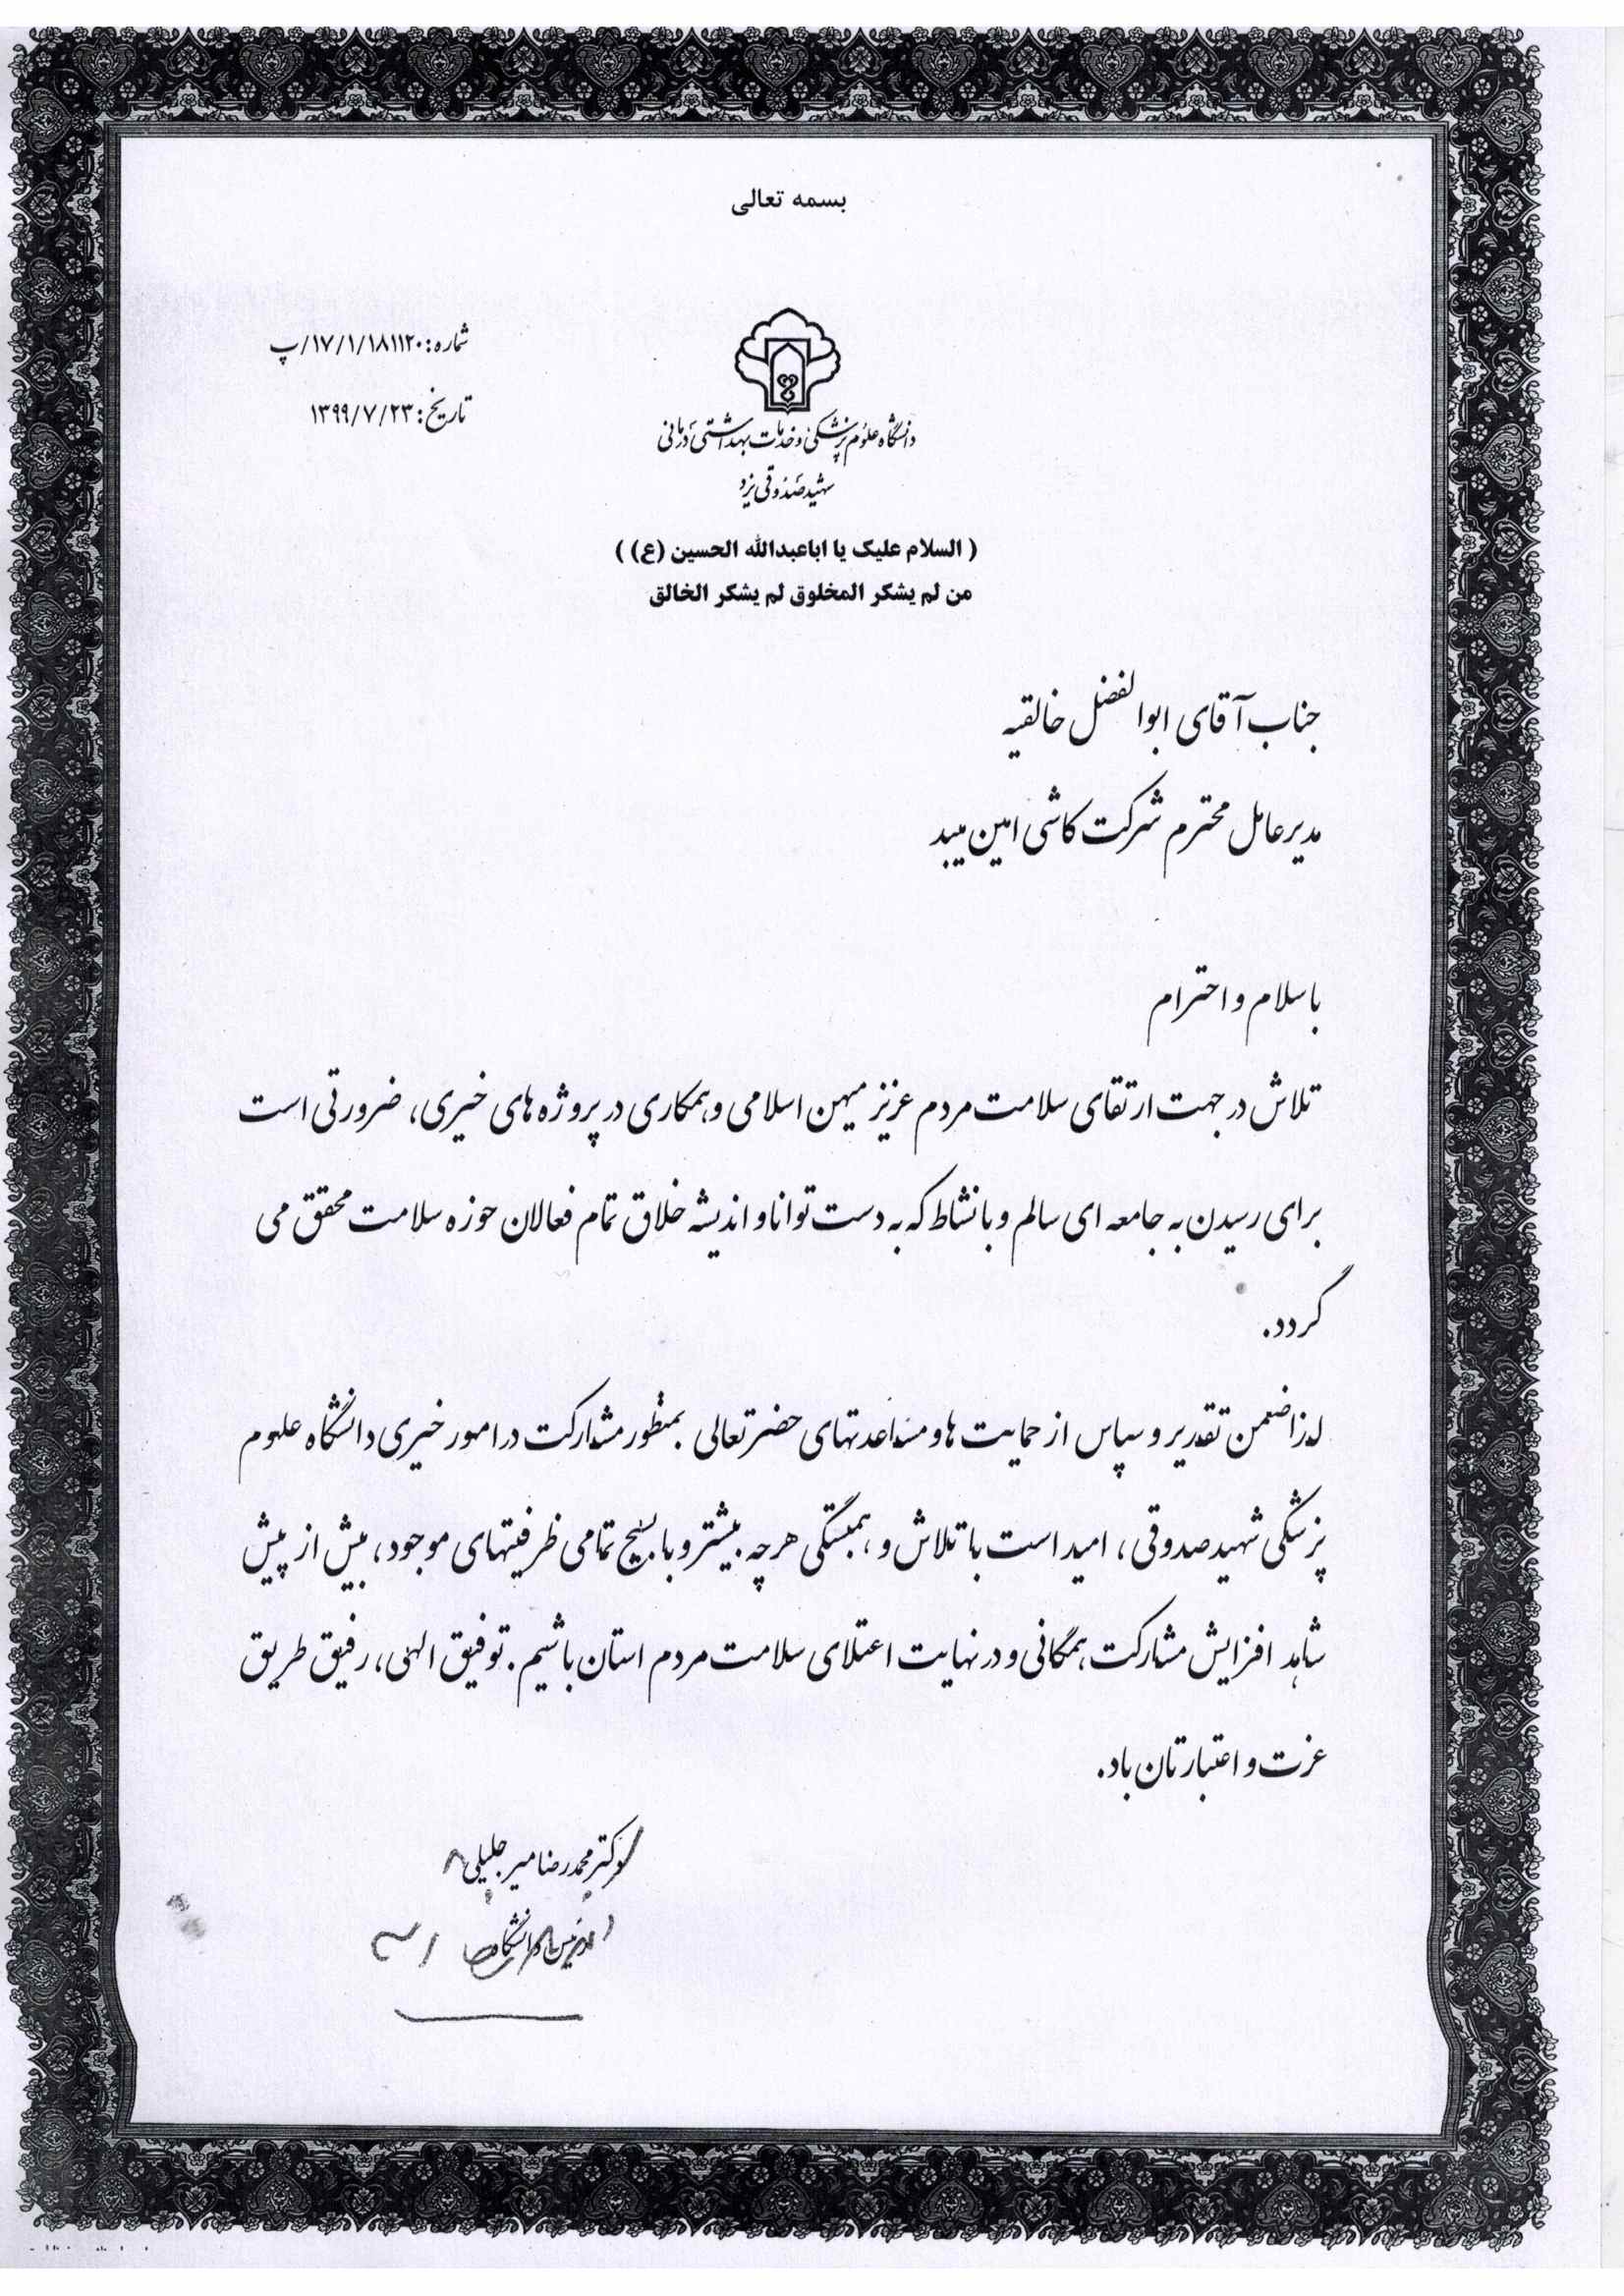 Amin Tile - certificate of apreciation - 2